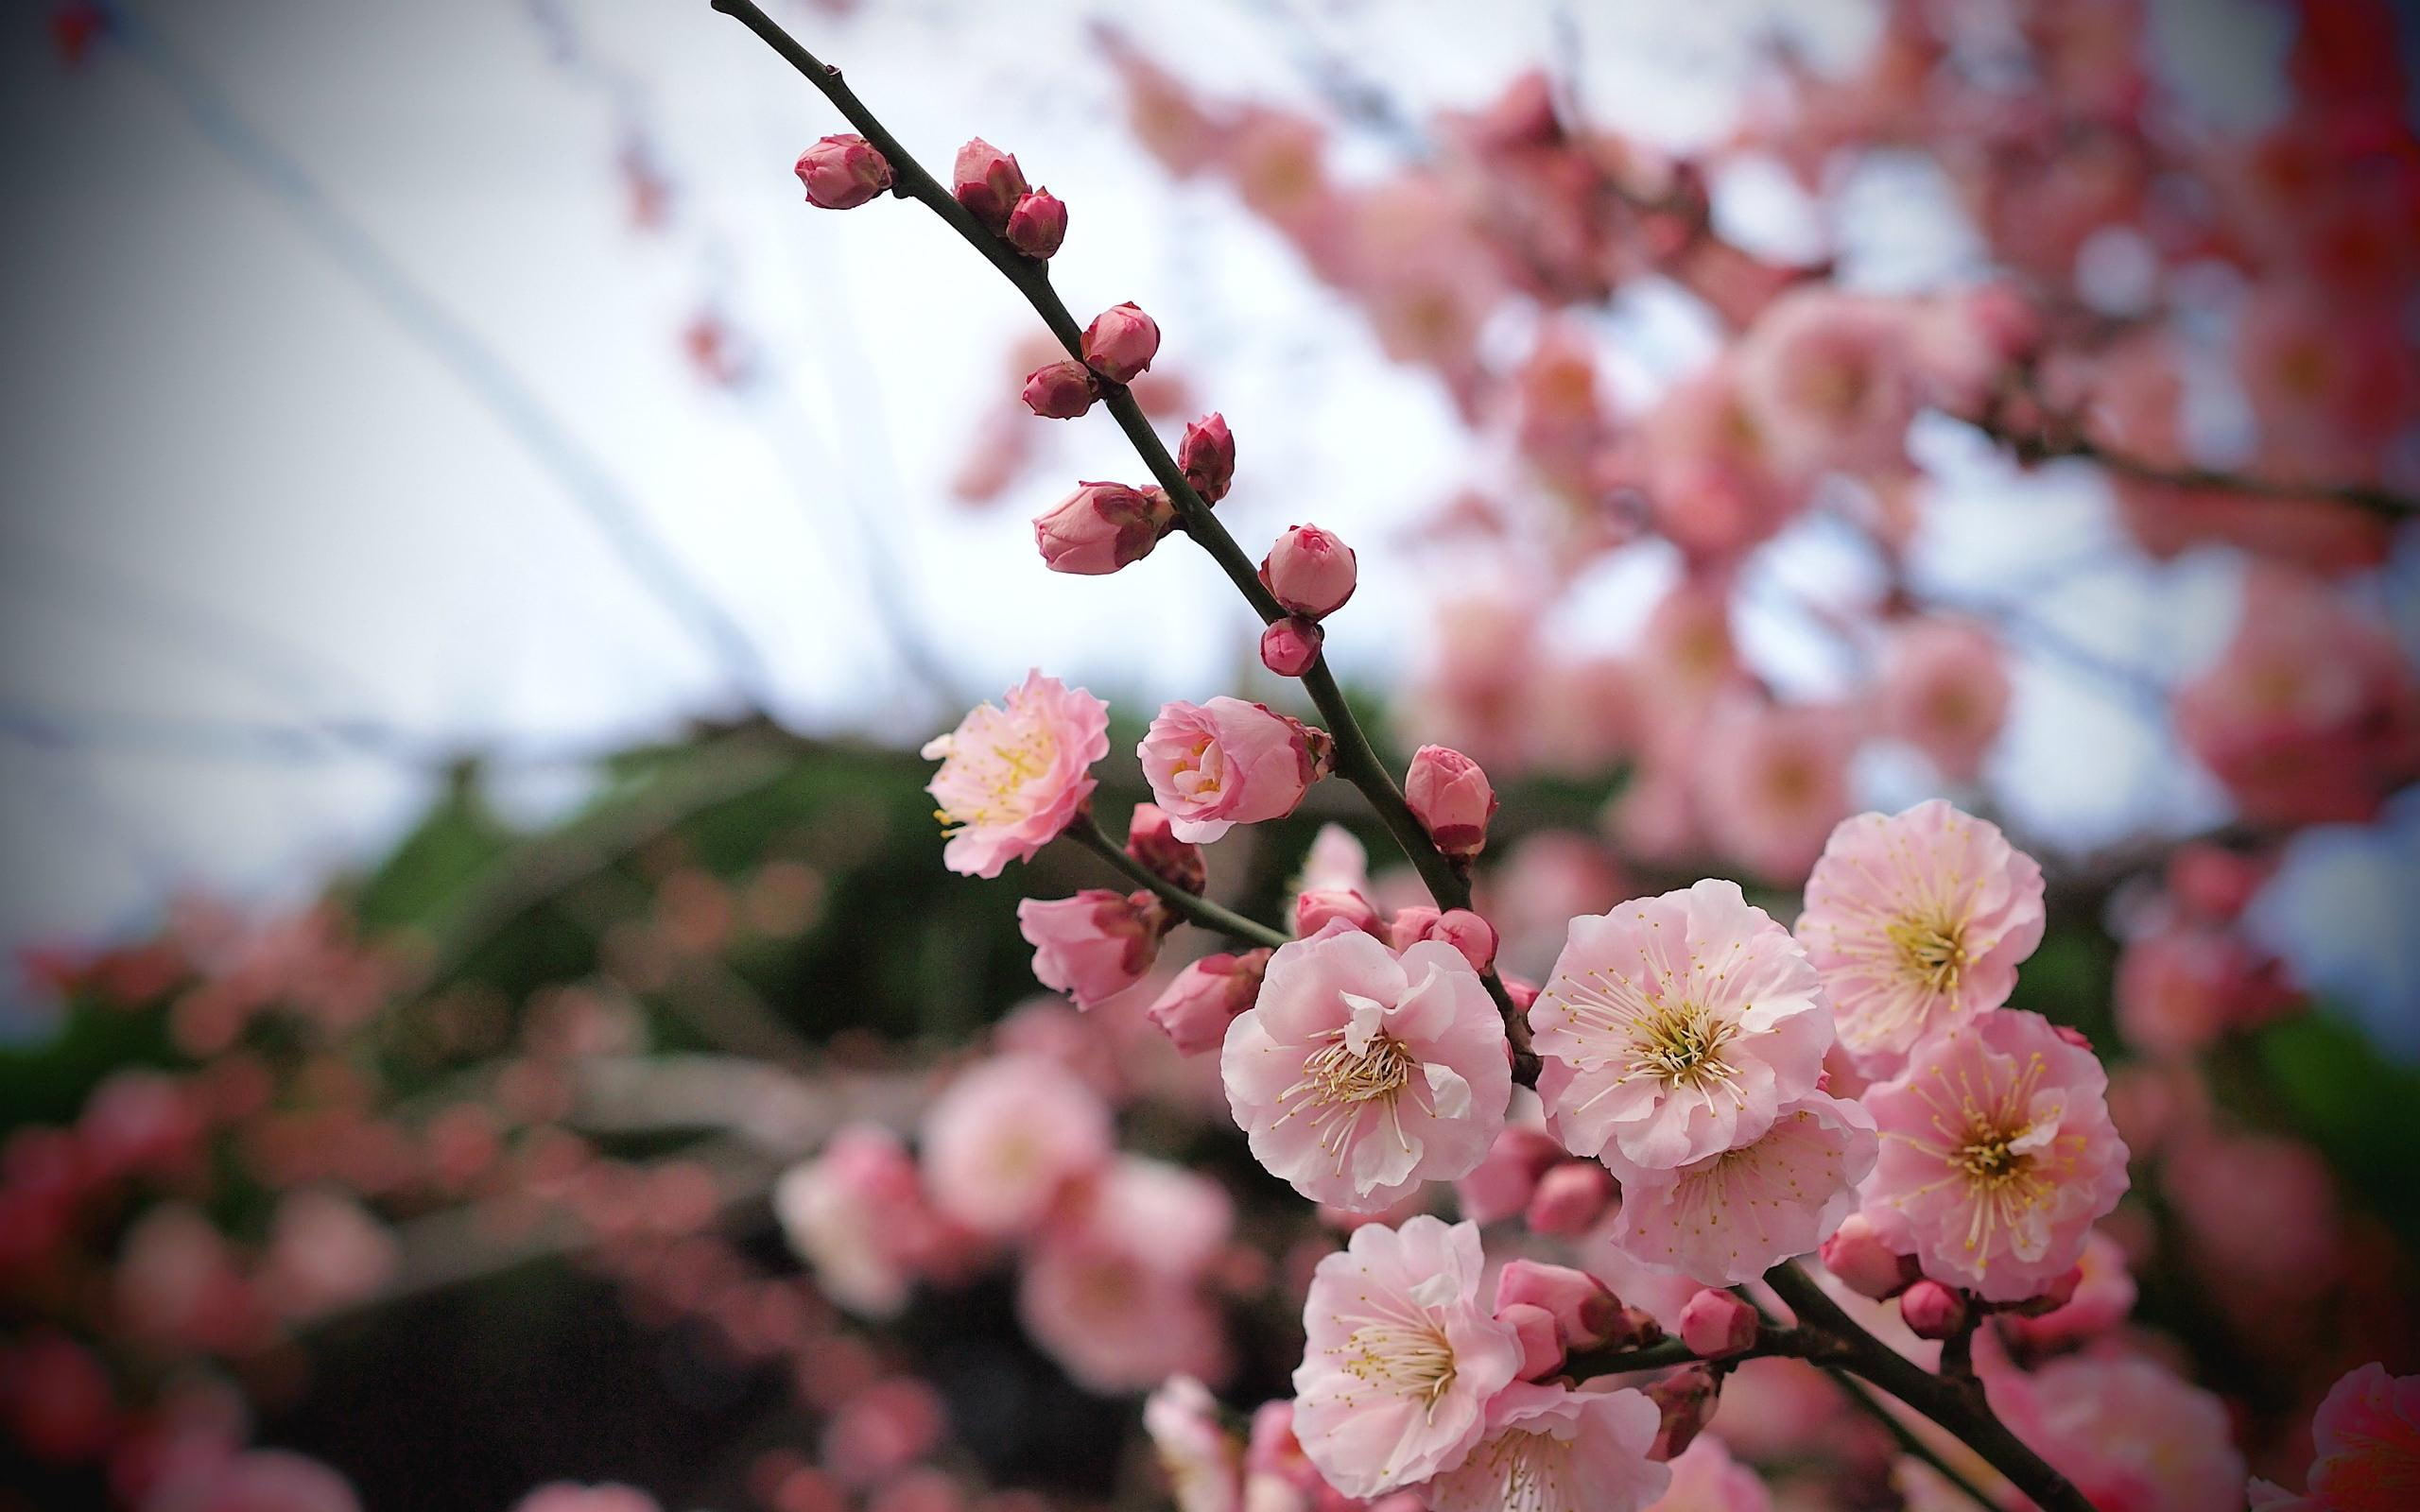 Apricot Blossom Buds, cherry blossom flower, spring, nature